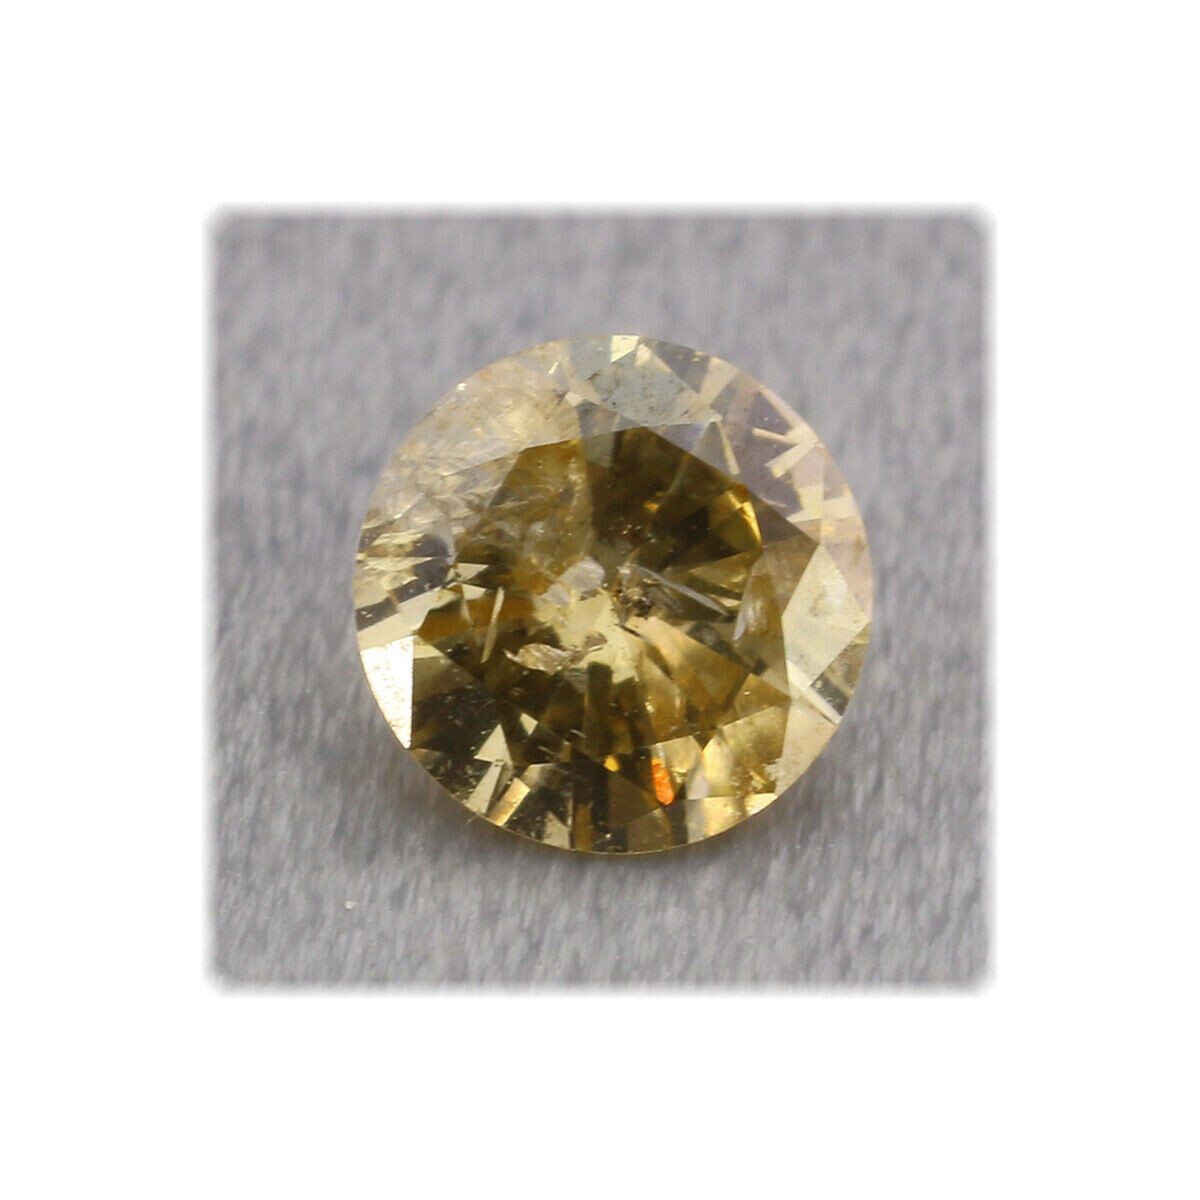 Diamant facettiert / P2 / rund 3,9 mm / 0,21 ct. / Farbe Gelb / Afrika